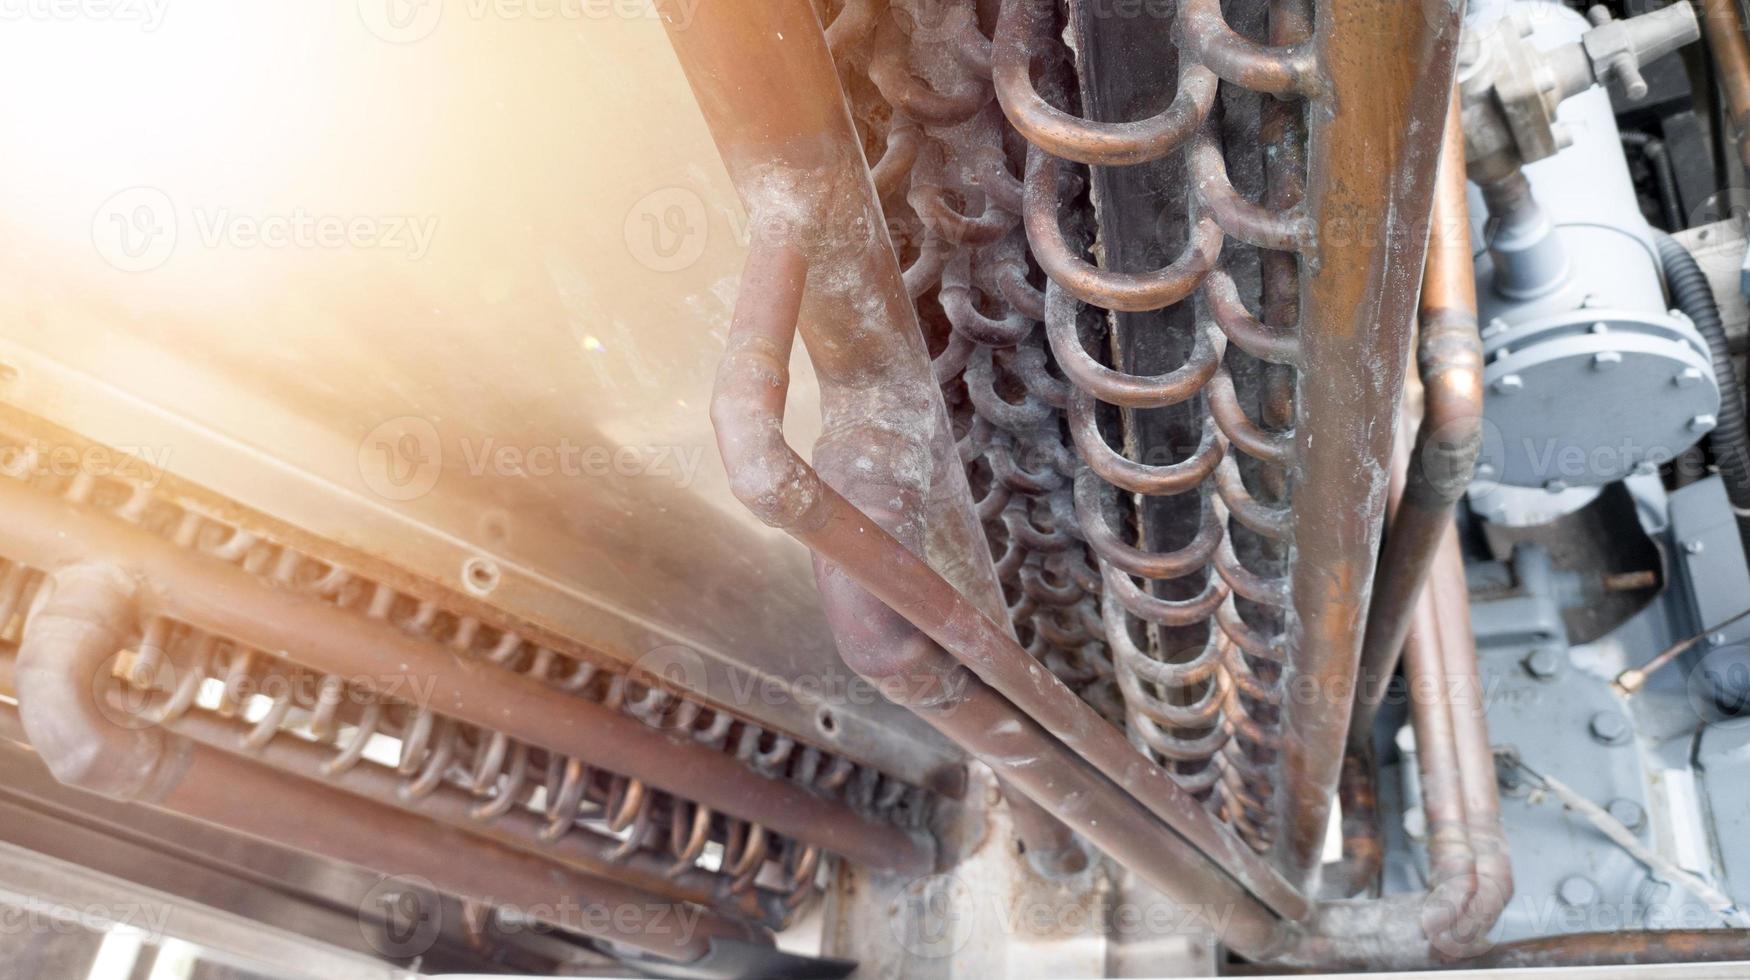 kondensor rör på de kylmedel systemet i kylare kompressor. foto